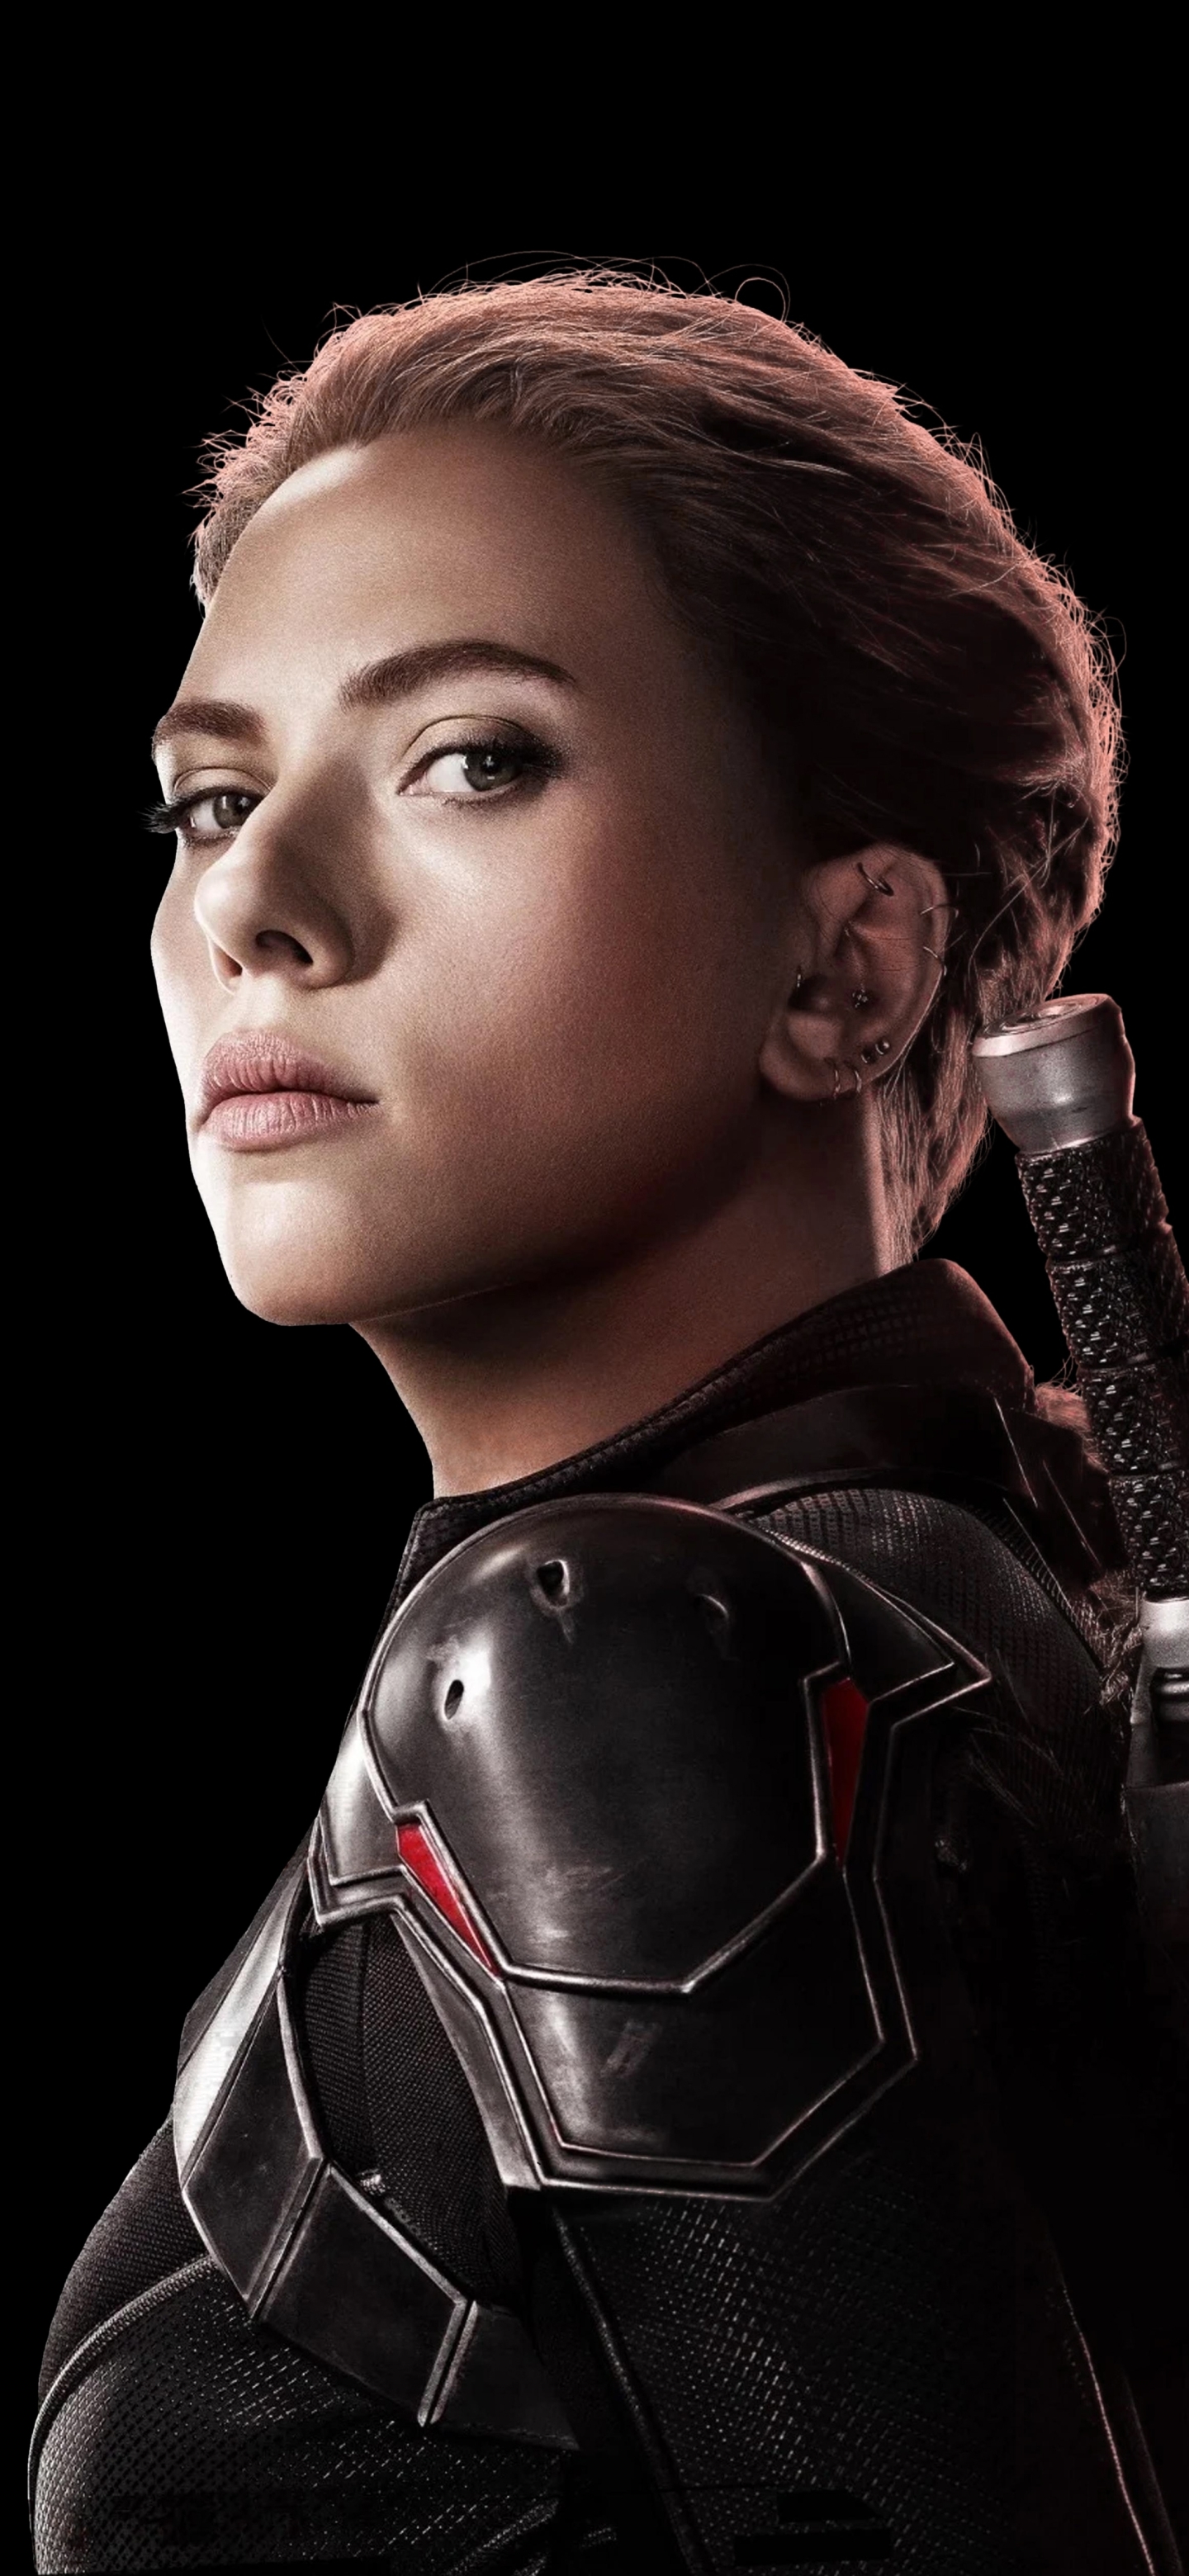 Descarga gratuita de fondo de pantalla para móvil de Scarlett Johansson, Americano, Películas, Actriz, Viuda Negra, Natasha Romanoff.